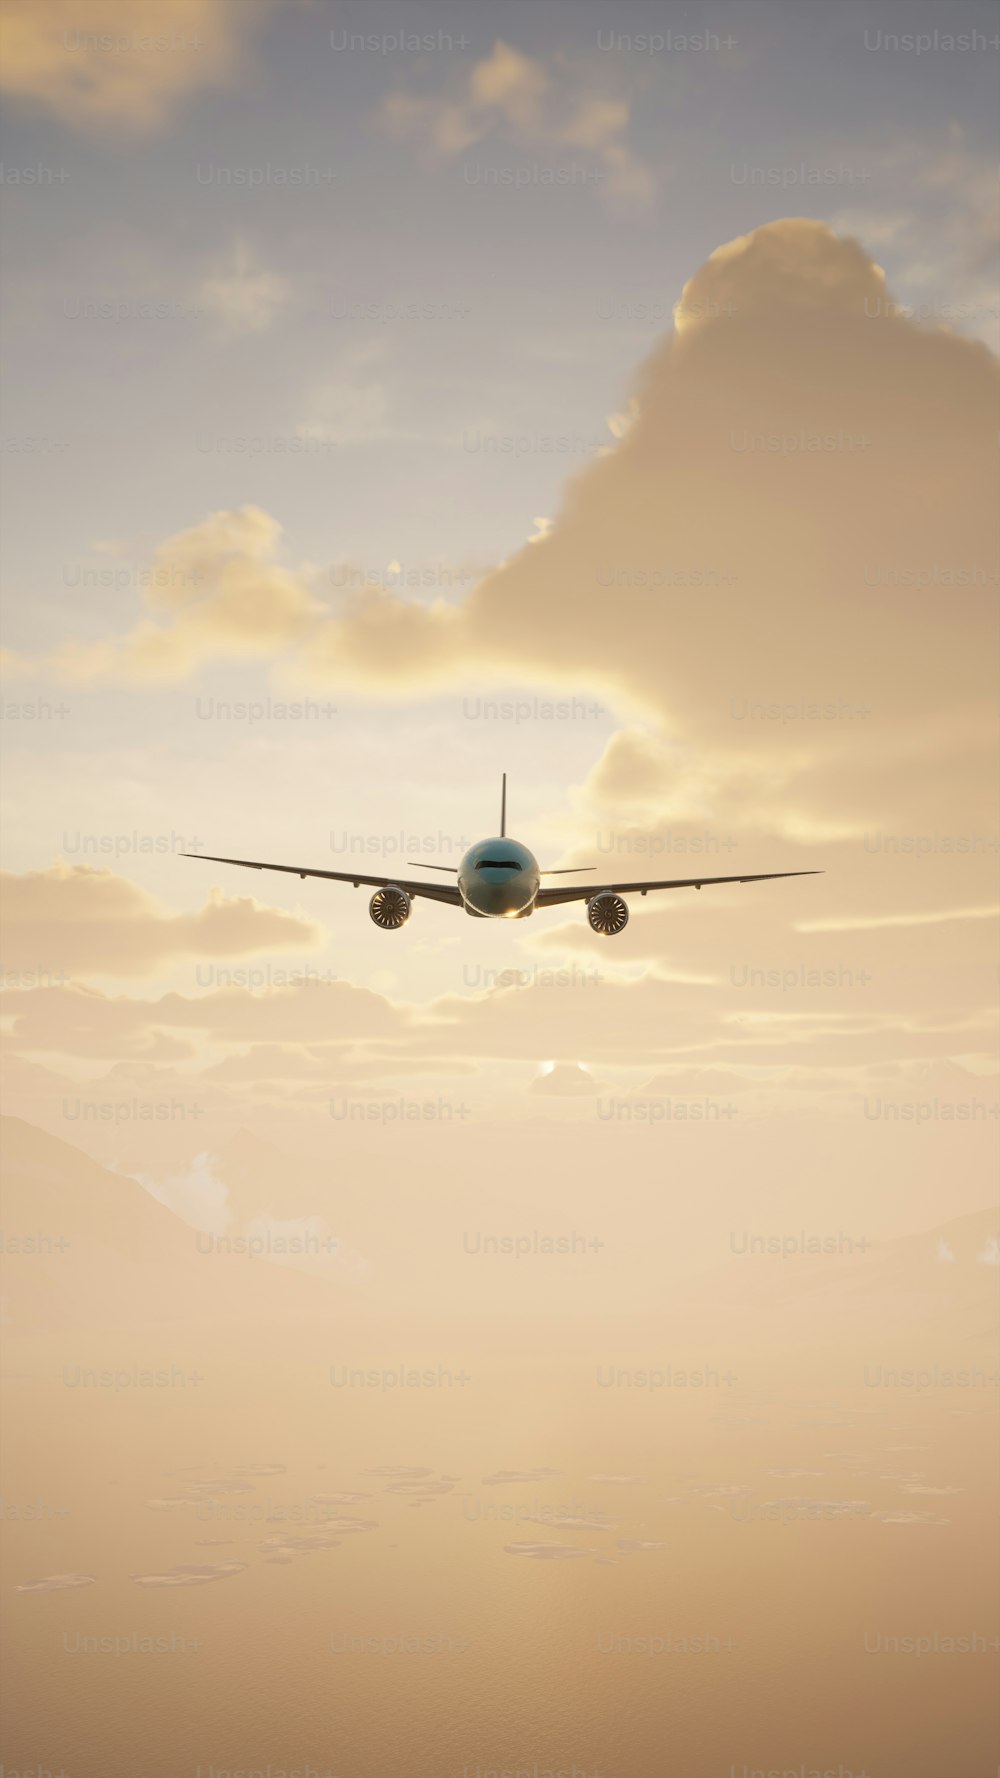 Un avion vole dans le ciel au coucher du soleil